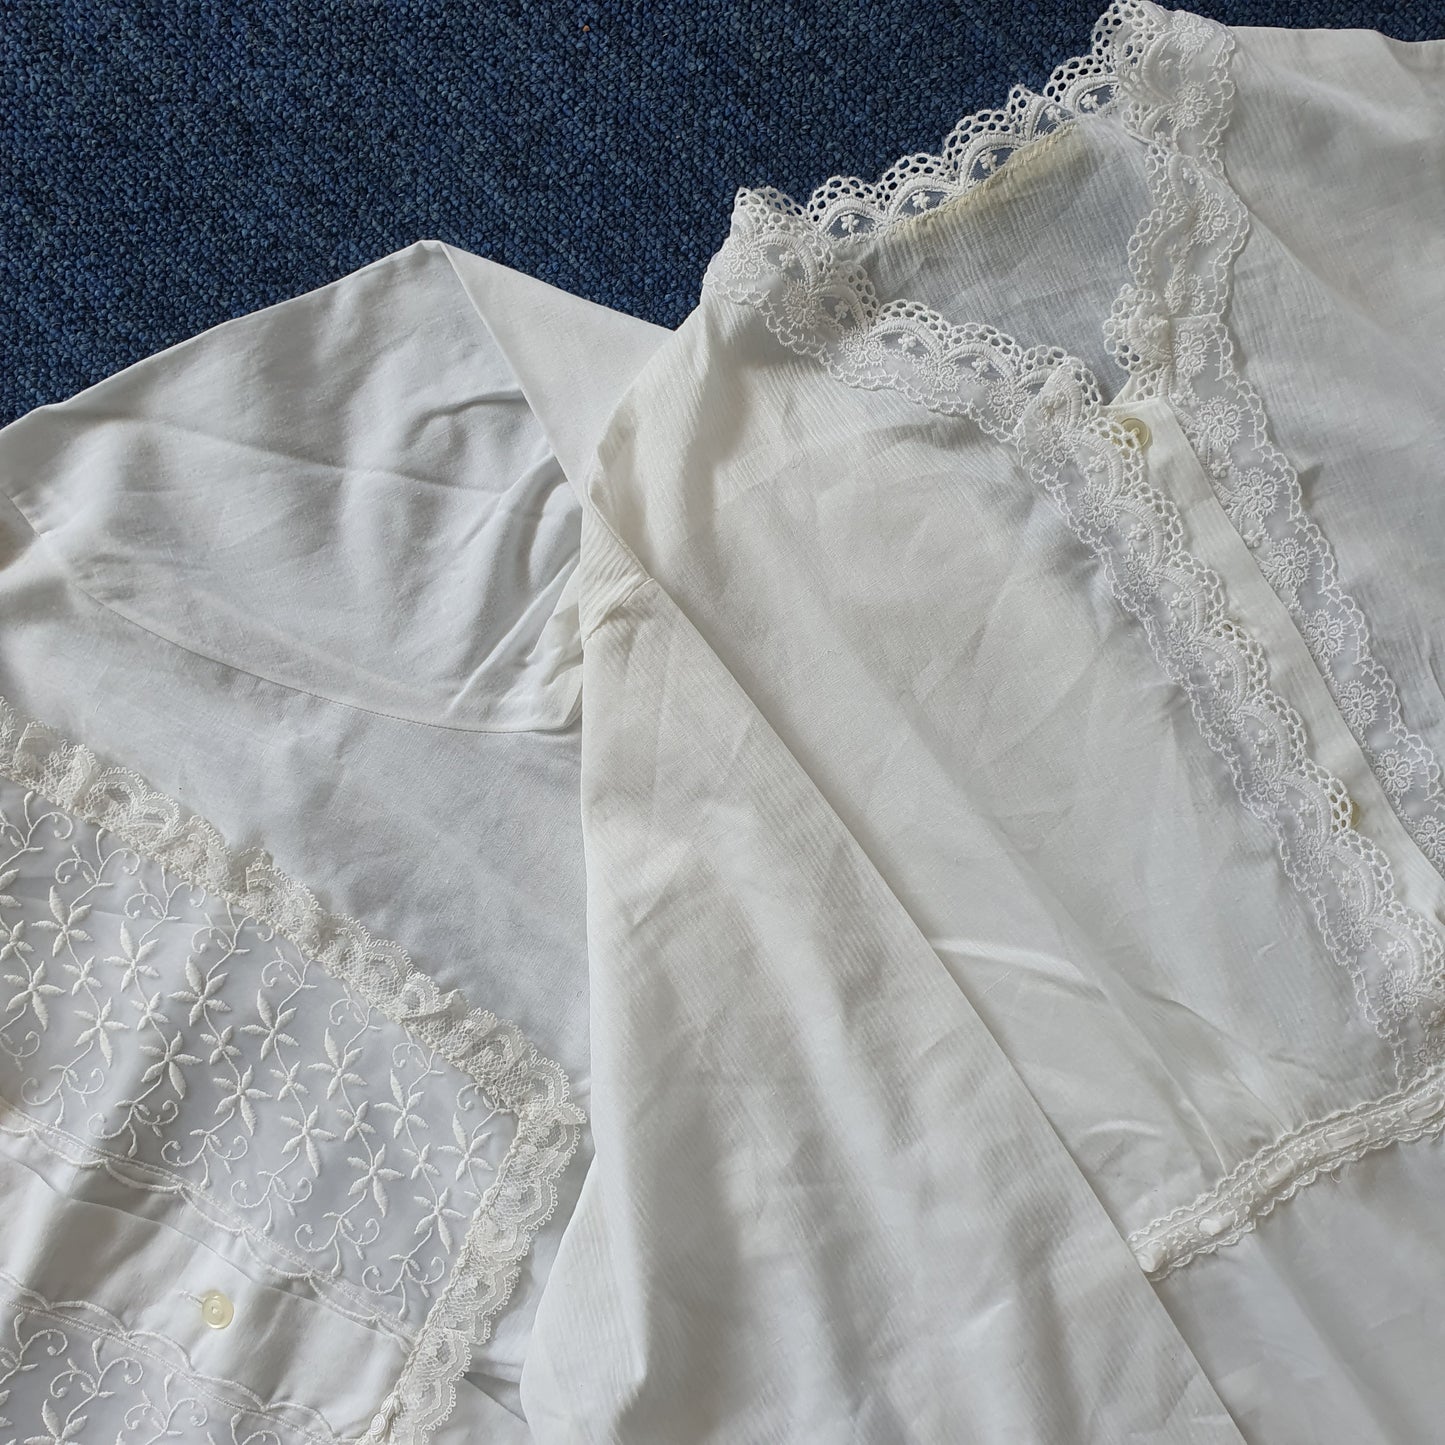 Antique/vintage cotton night gowns- 3 pieces